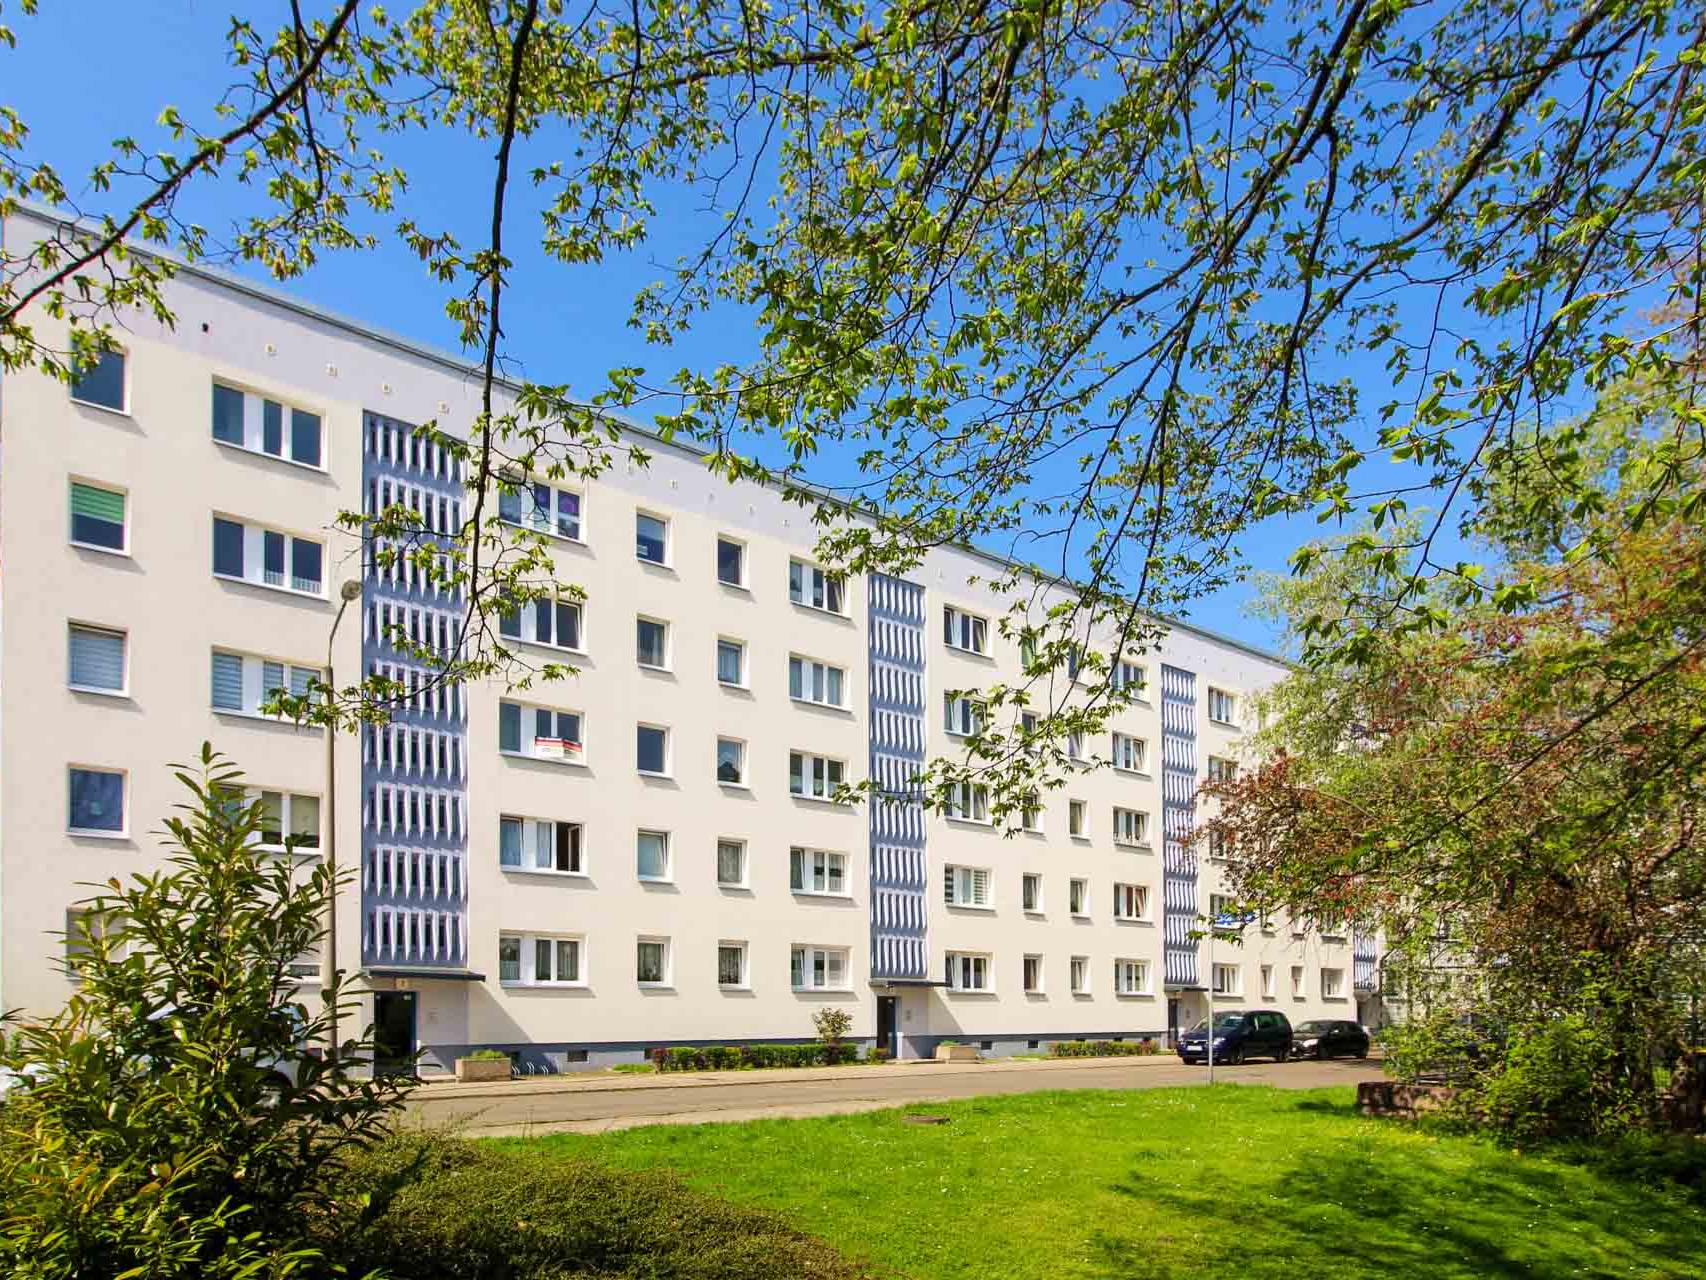 Frisch sanierte Wohnungen, gepflegtes Umfeld und die Straßenbahn gleich um die Ecke. Wohnen in der Gottfried-Semper Straße in der Neustadt.